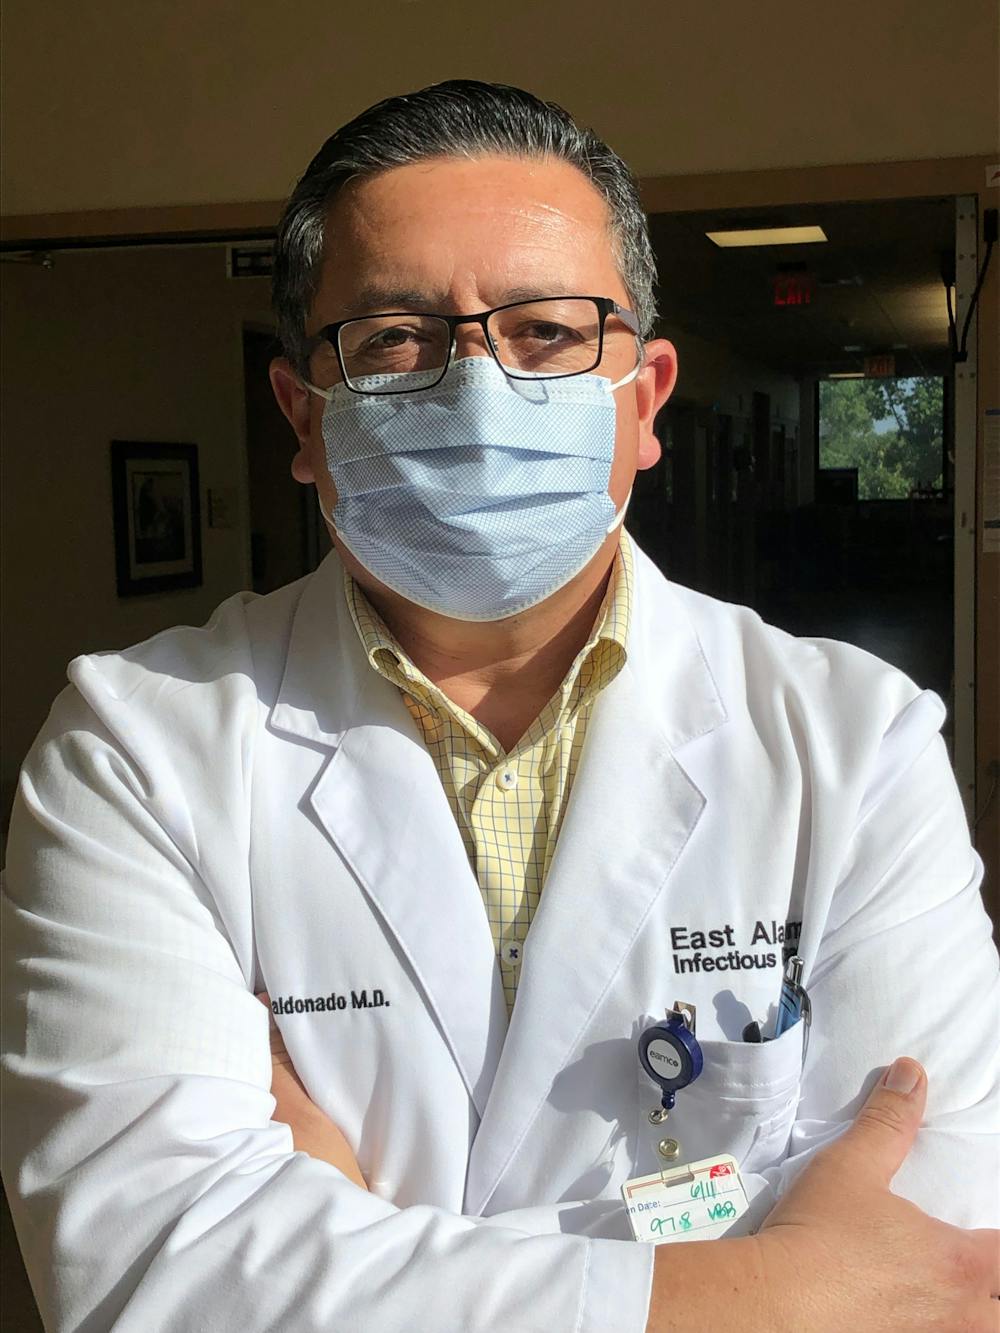 Dr. Maldonado: "My life is medicine."